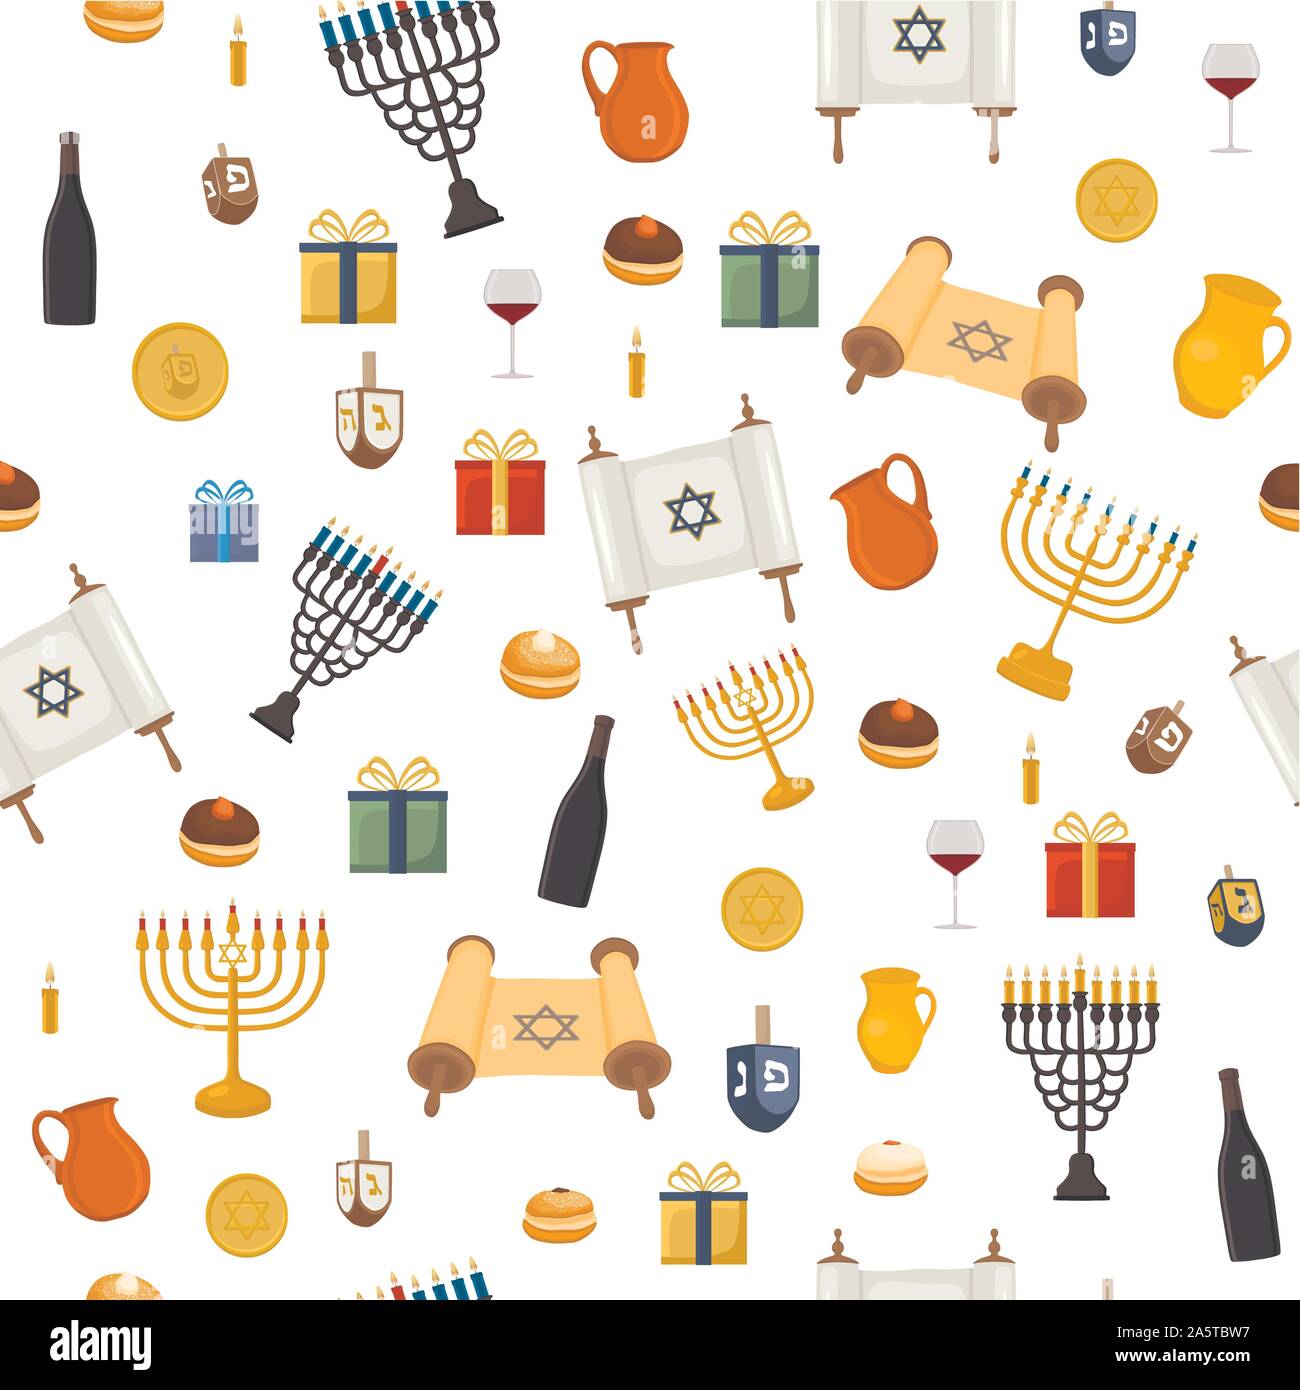 Vector Illustration für Chanukka ist groß jüdische Feiertag. Chanukka Muster bestehend aus Davidstern, menora sufganiyot Donuts, Dekoration, Ton j Stock Vektor